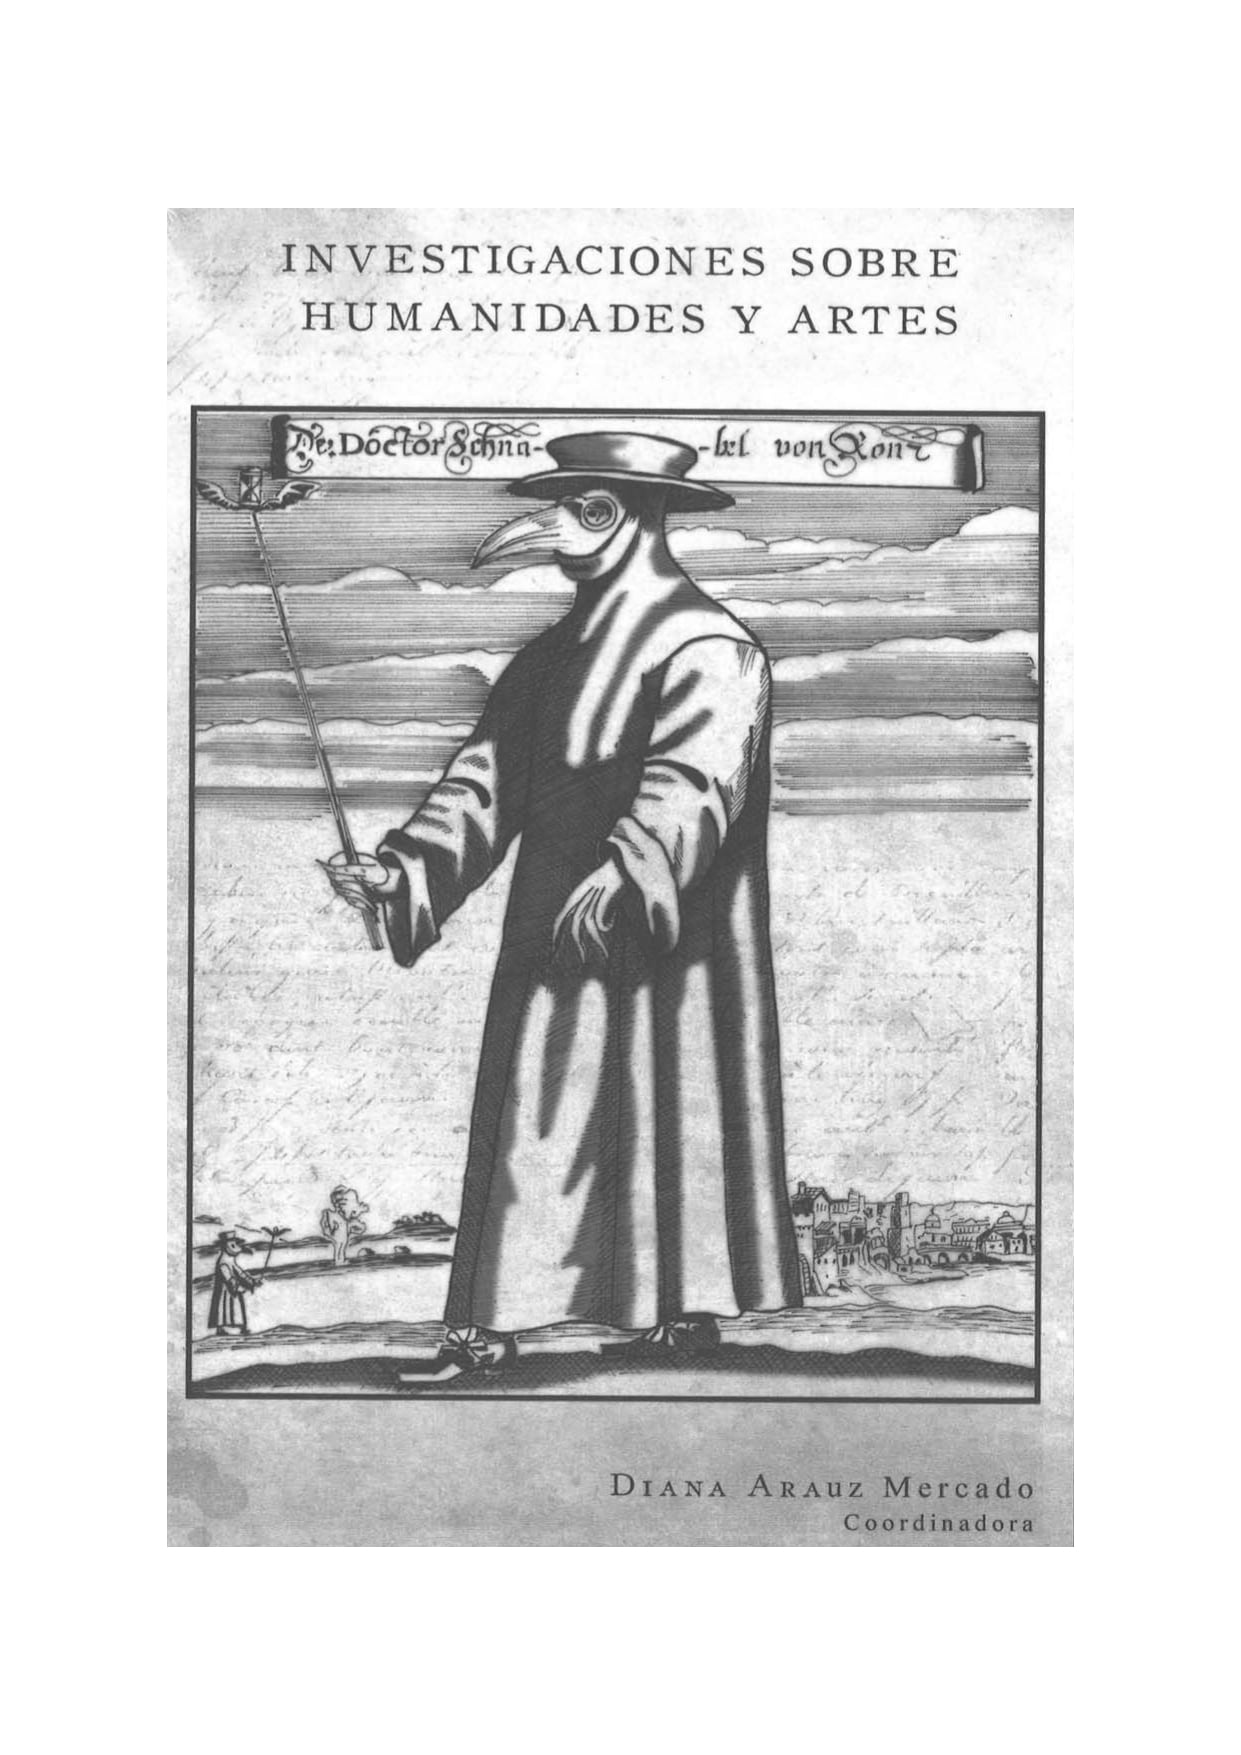 Imagen de portada del libro Investigaciones sobre humanidades y artes